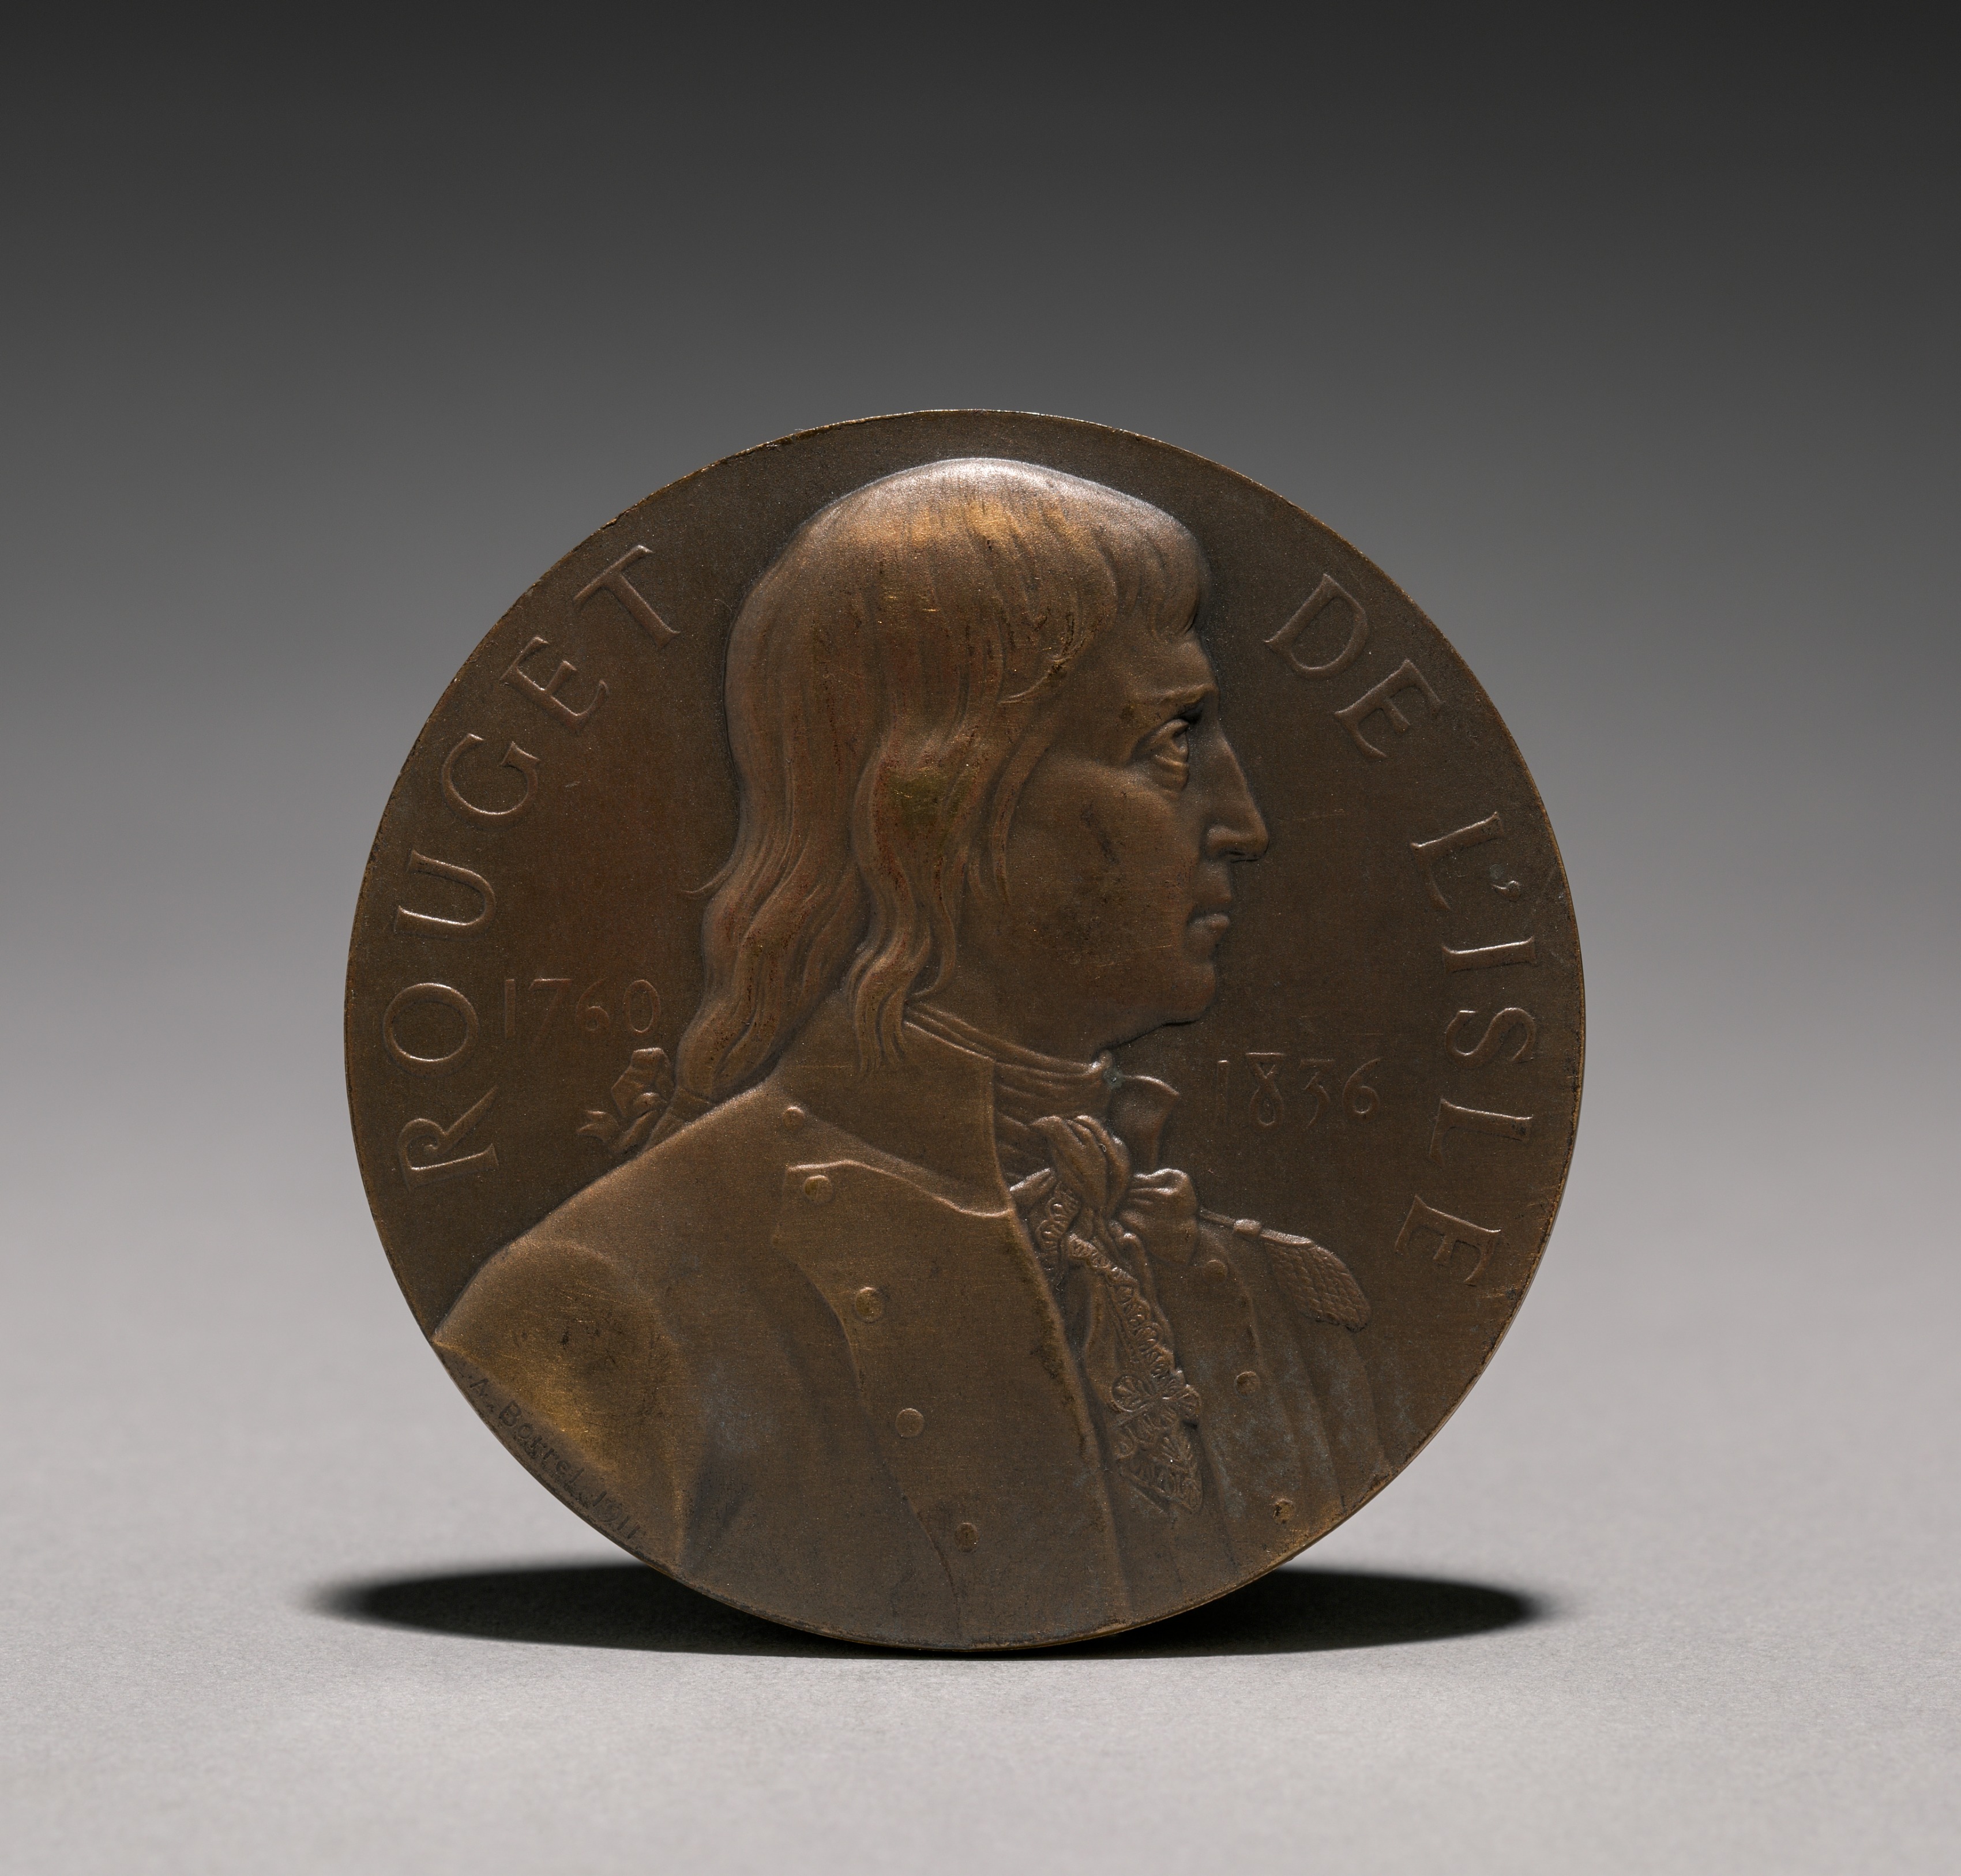 Medal of Claude Joseph Rouget de L'Isle (1760-1836) (obverse)